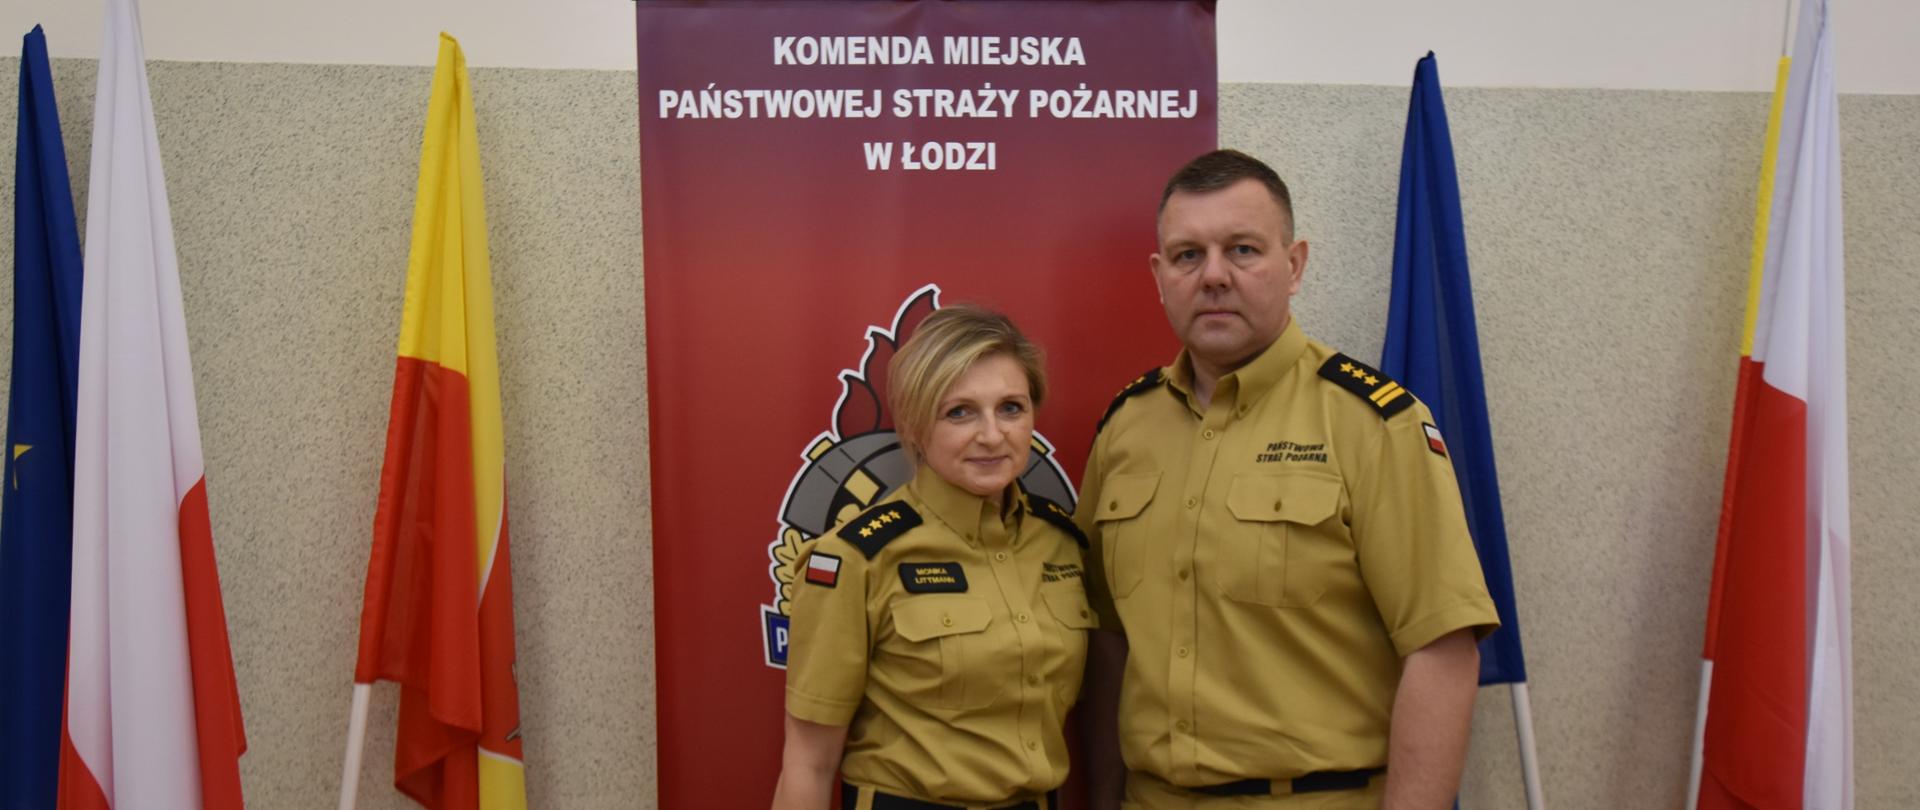 Strażacy PSP w nowym piaskowym umundurowaniu na tle logo PSP obok flagi RP, UE oraz Miasta Łodzi